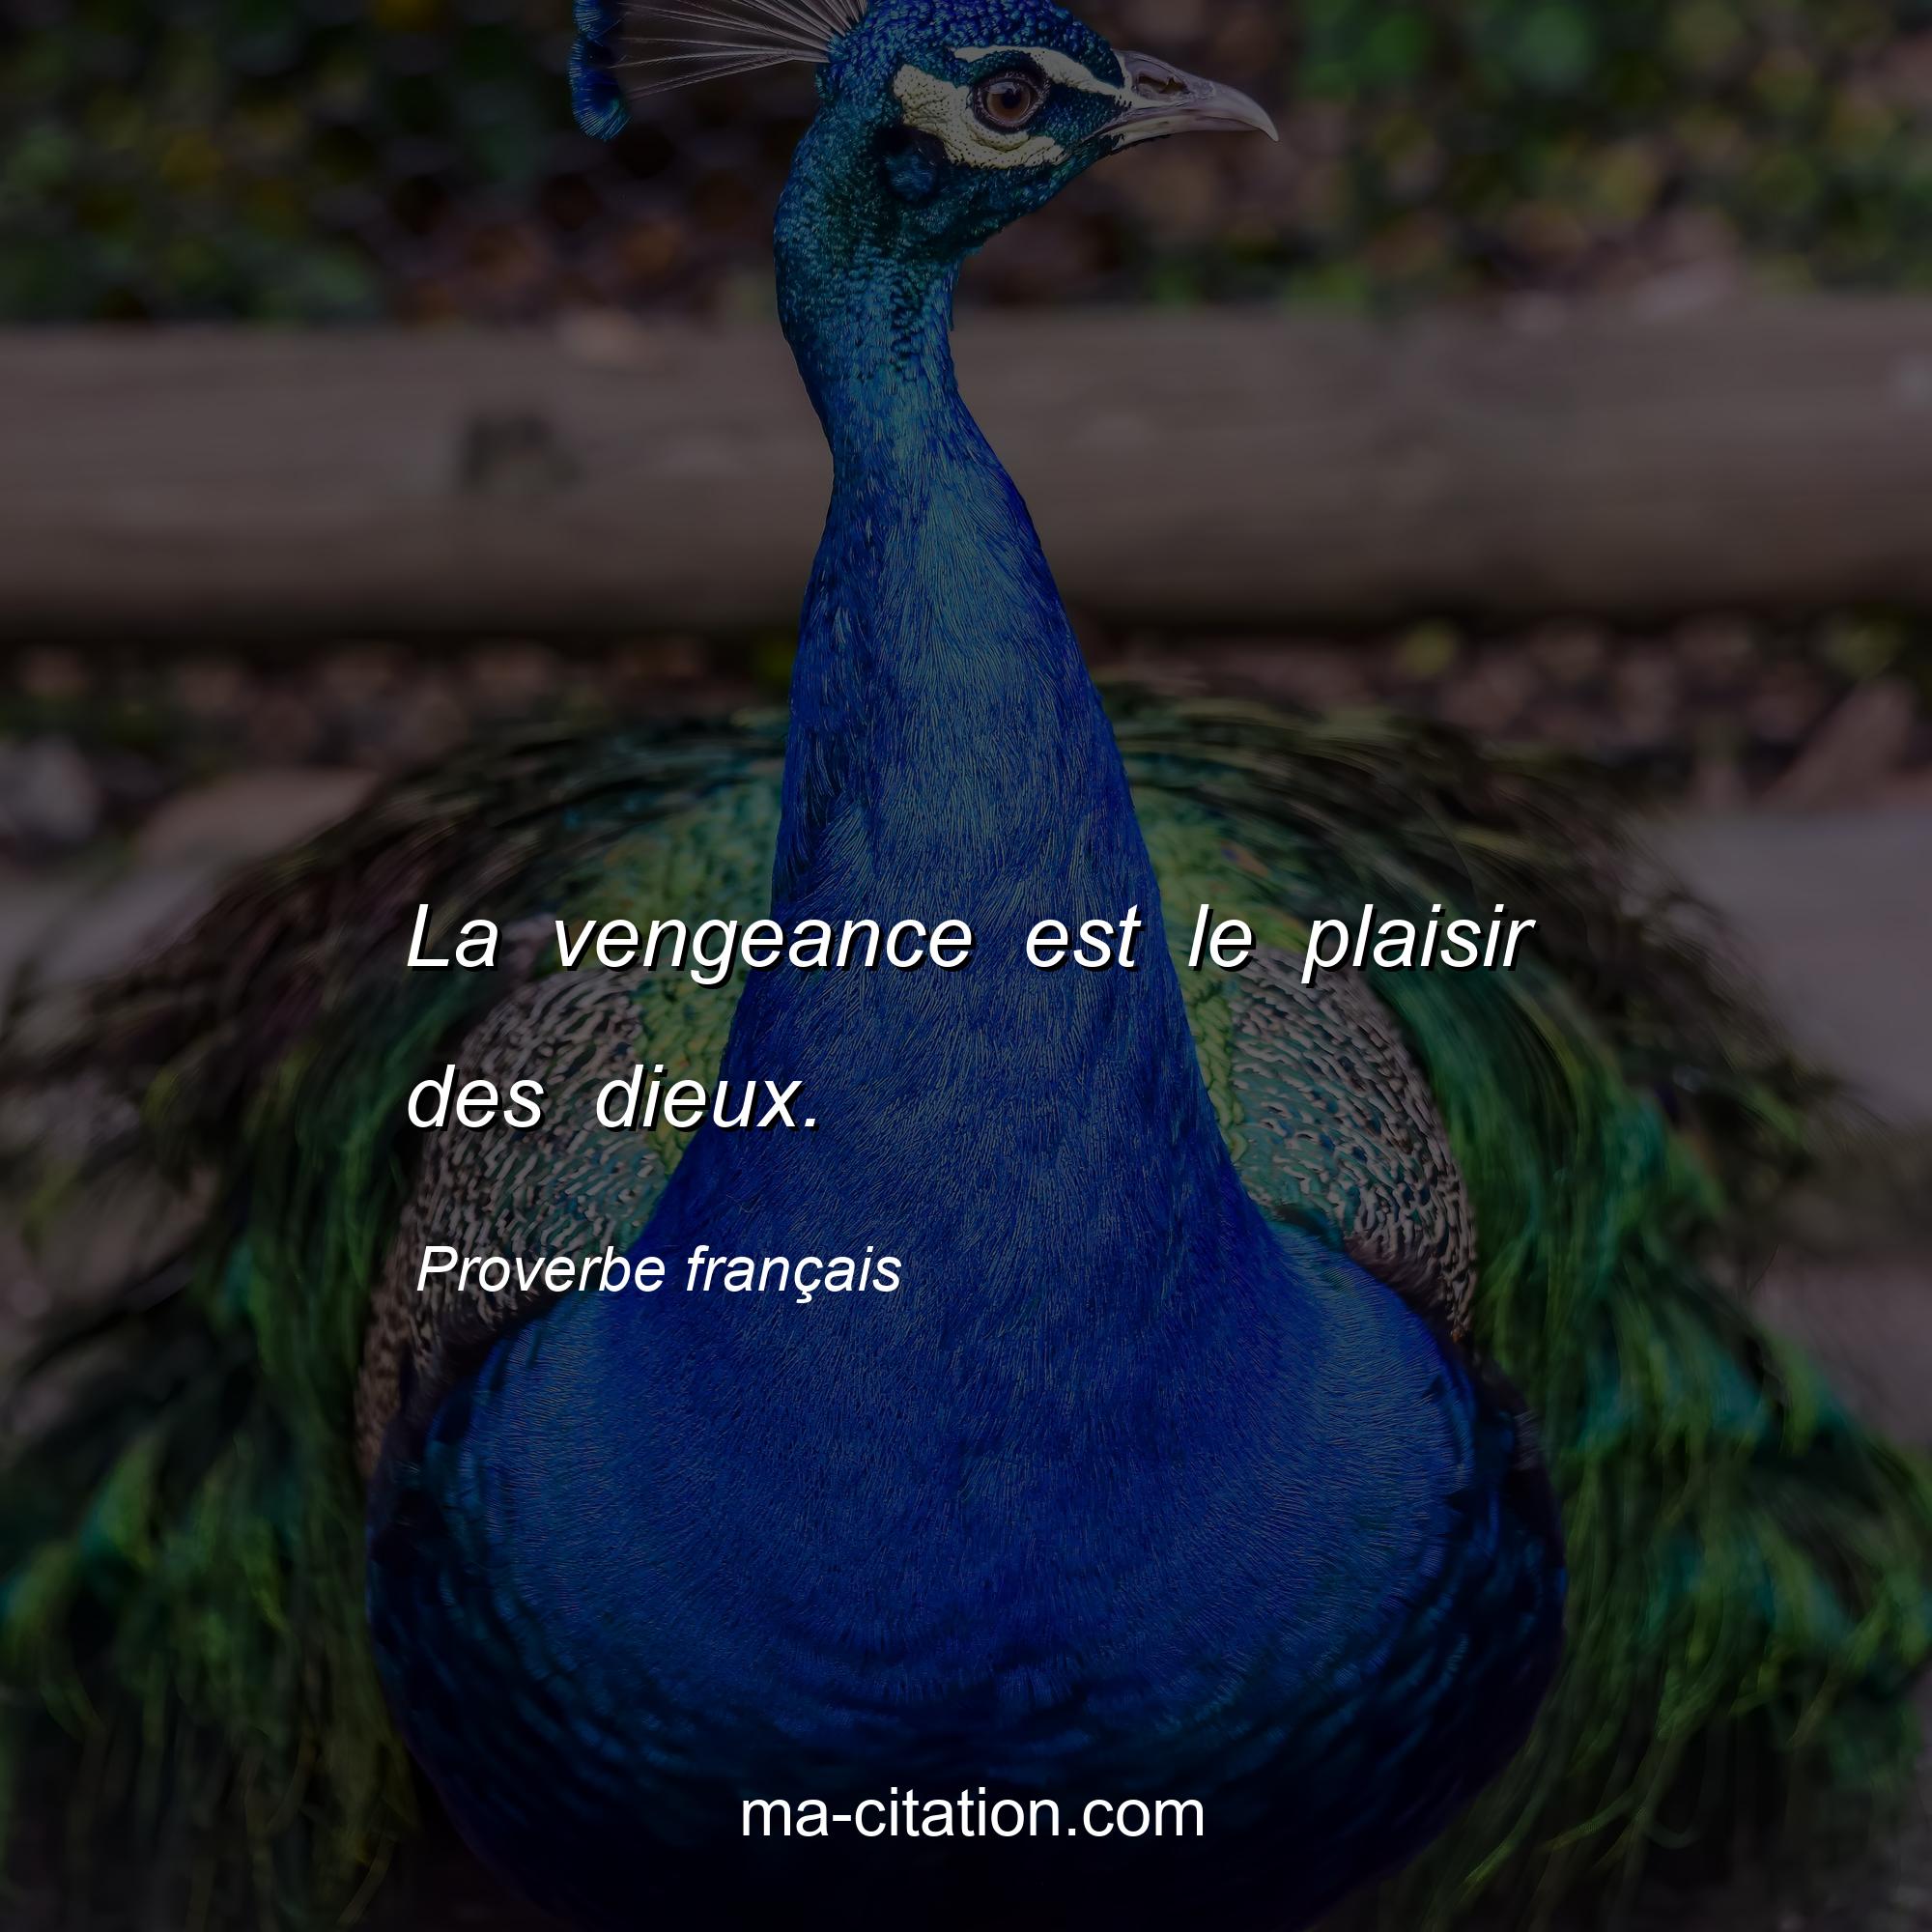 Proverbe français : La vengeance est le plaisir des dieux.